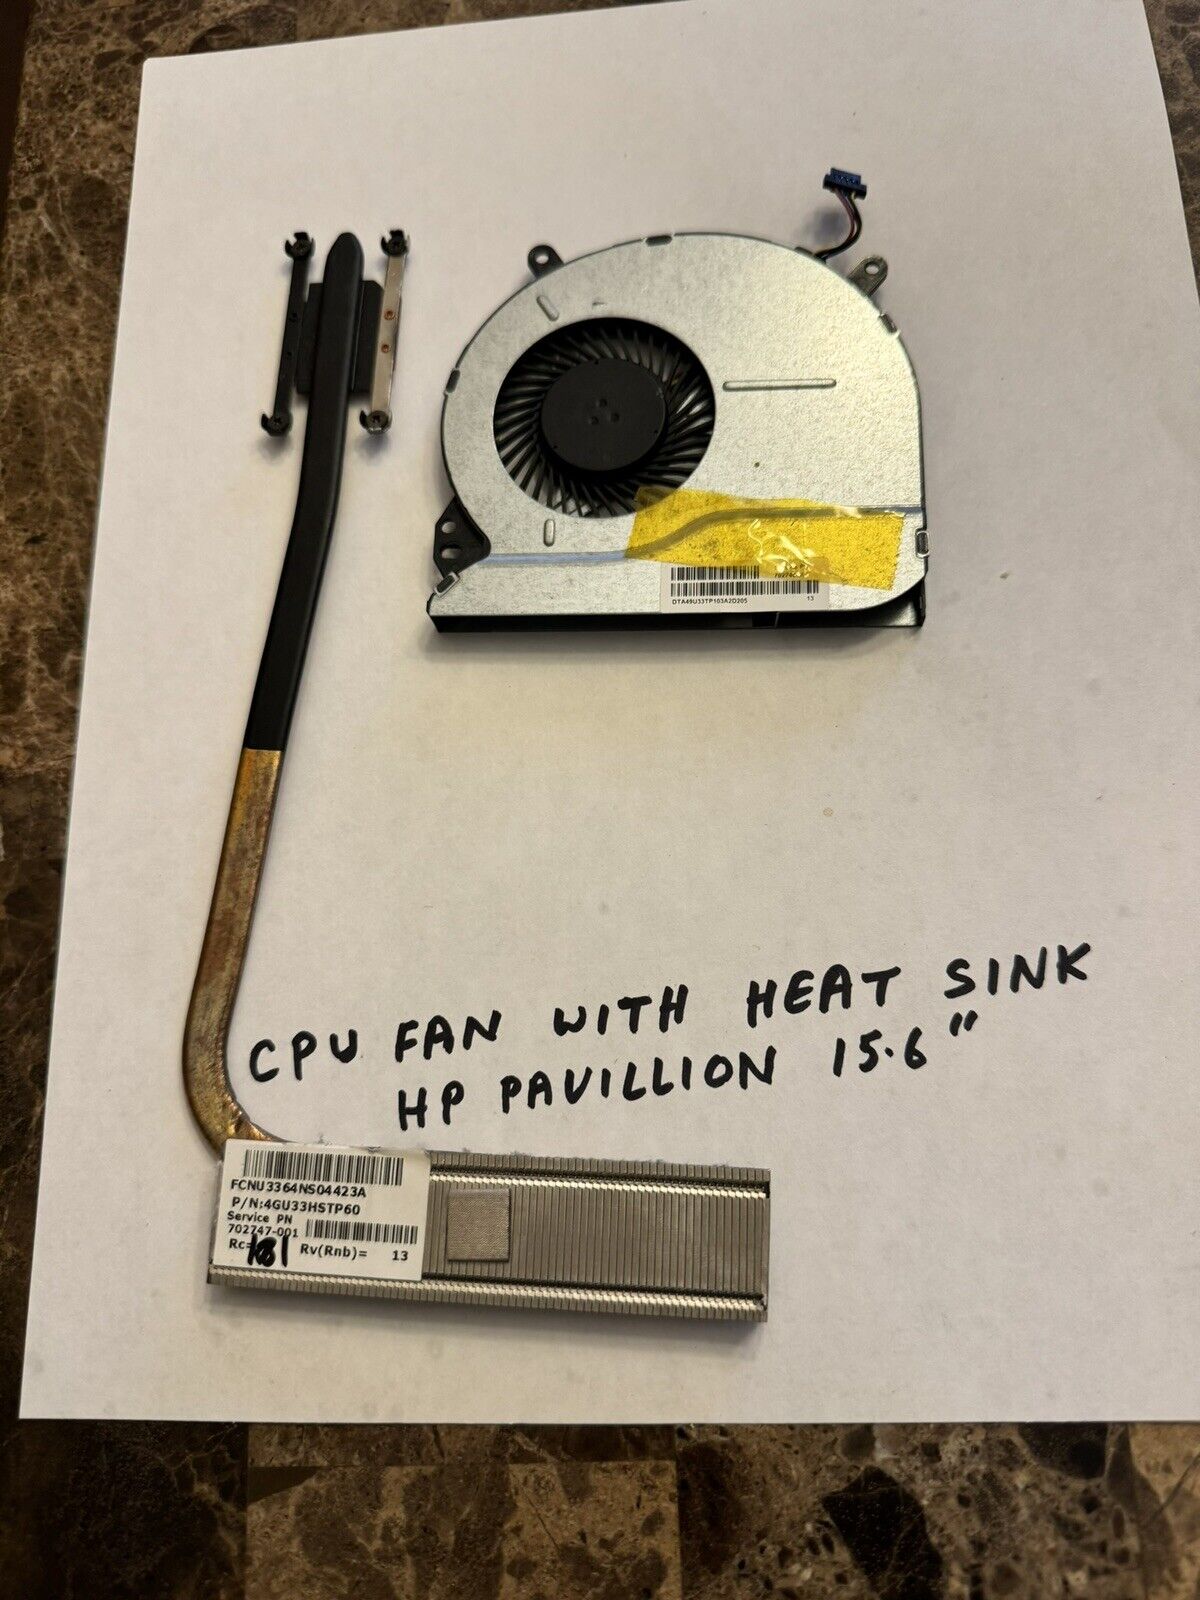 HP 644725-001 Pavilion Slimline S5 CPU Fan with Heatsink